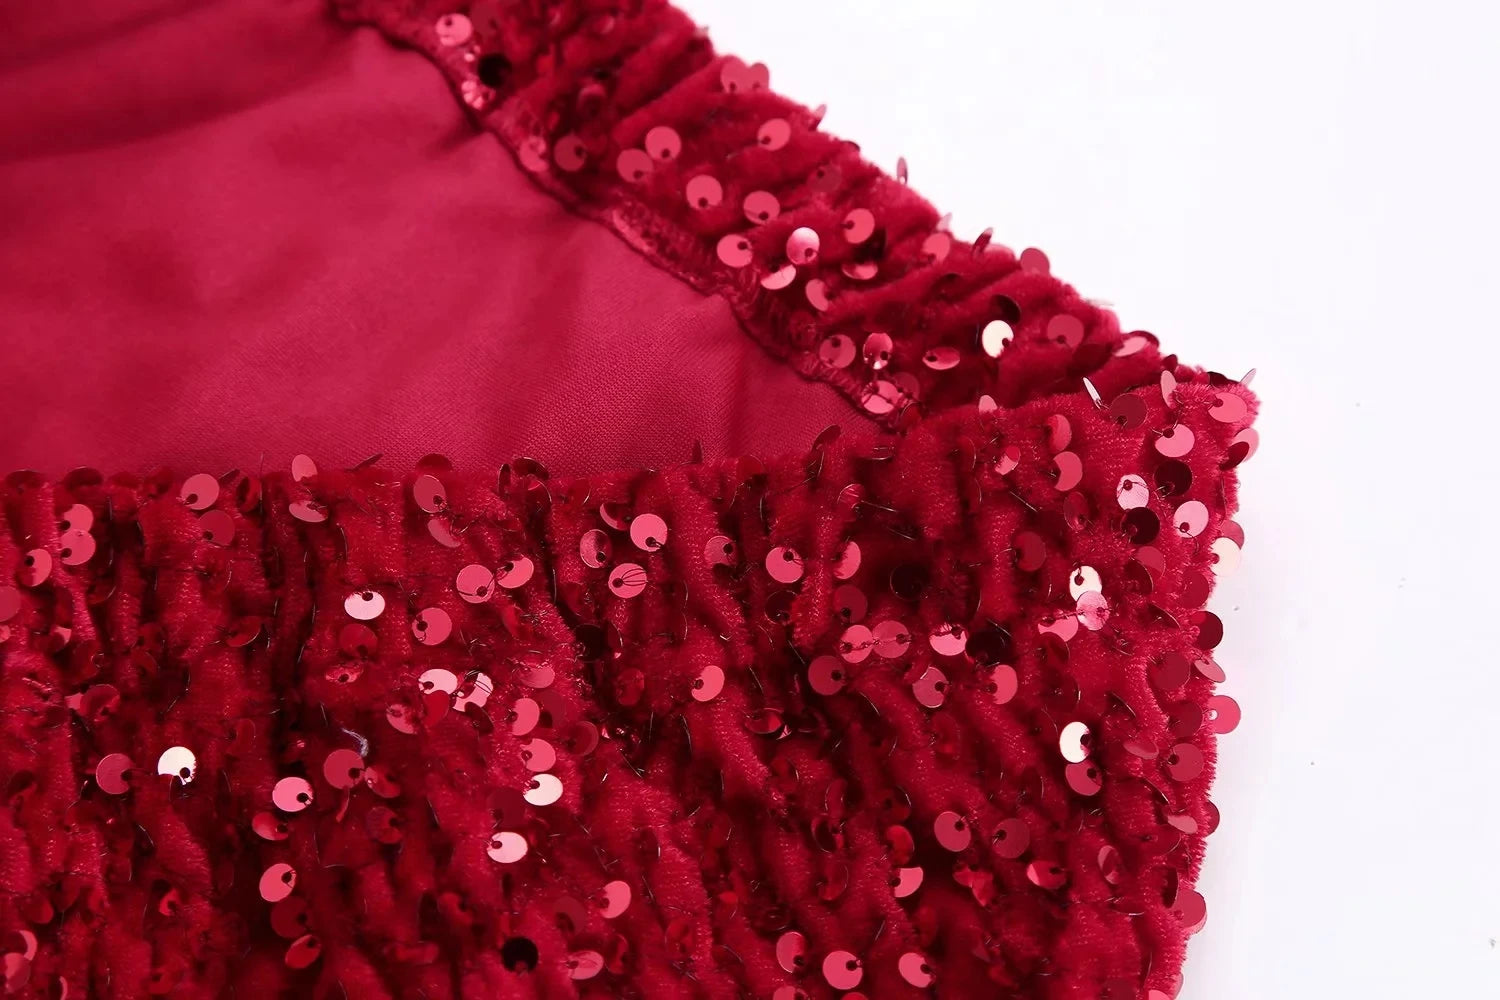 Red Sequin Midi Skirt